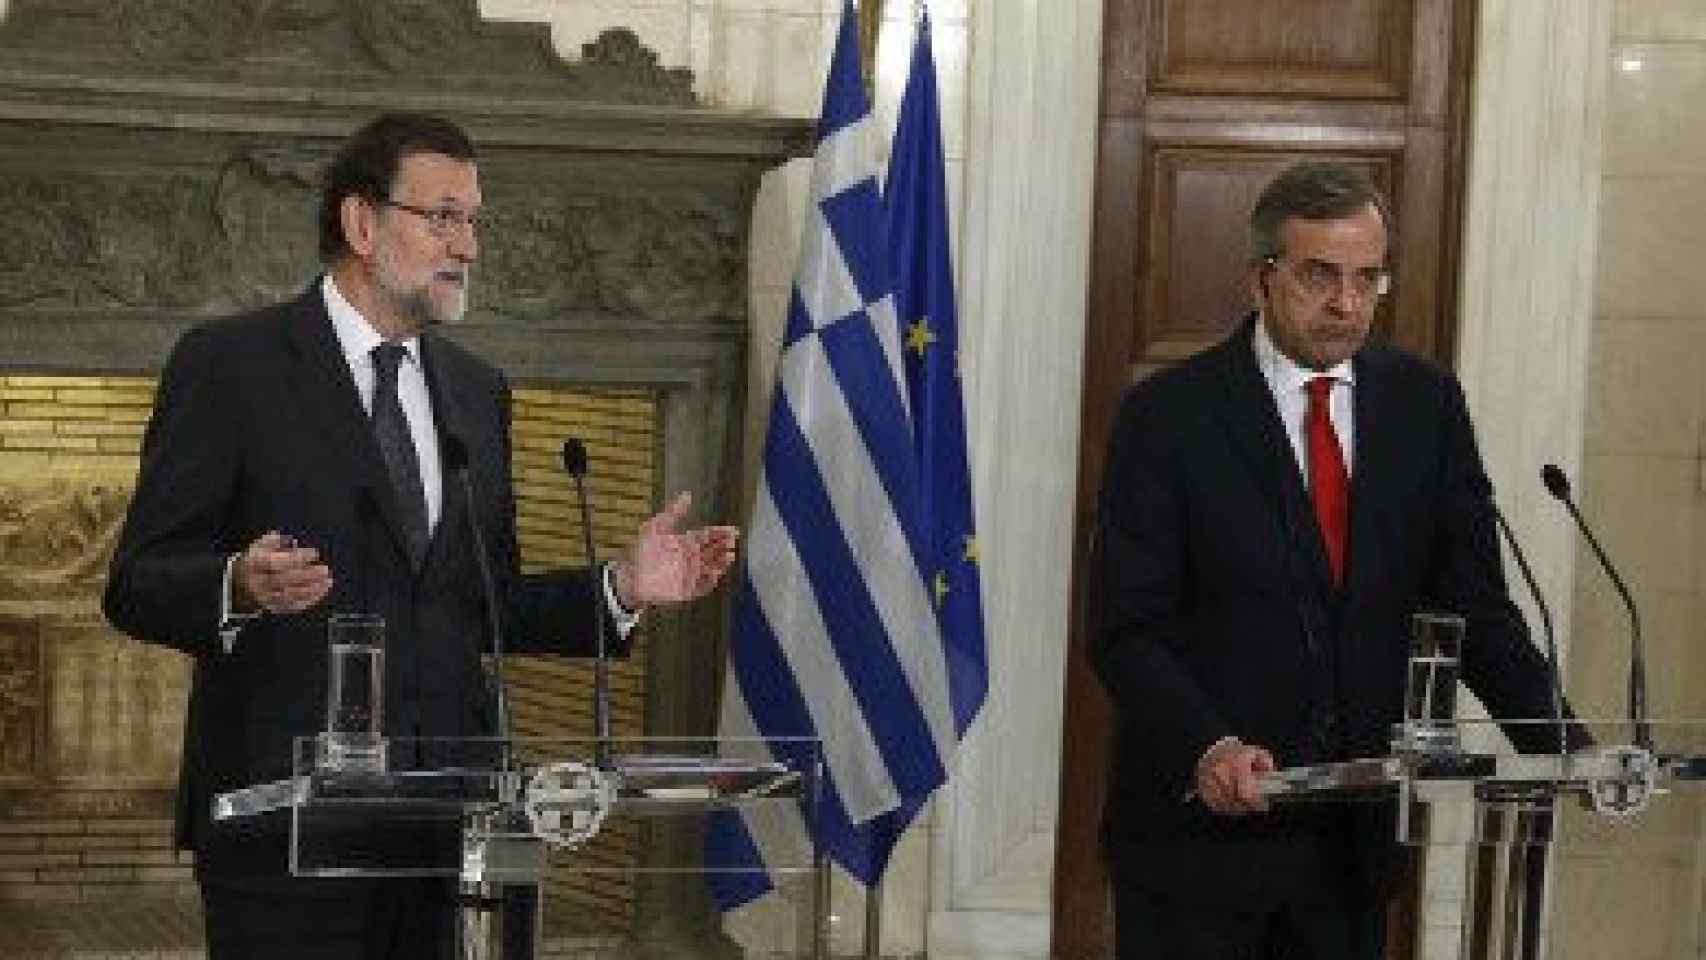 El presidente del Gobierno, Mariano Rajoy, en rueda de prensa junto al primer ministro griego, Andonis Samaras